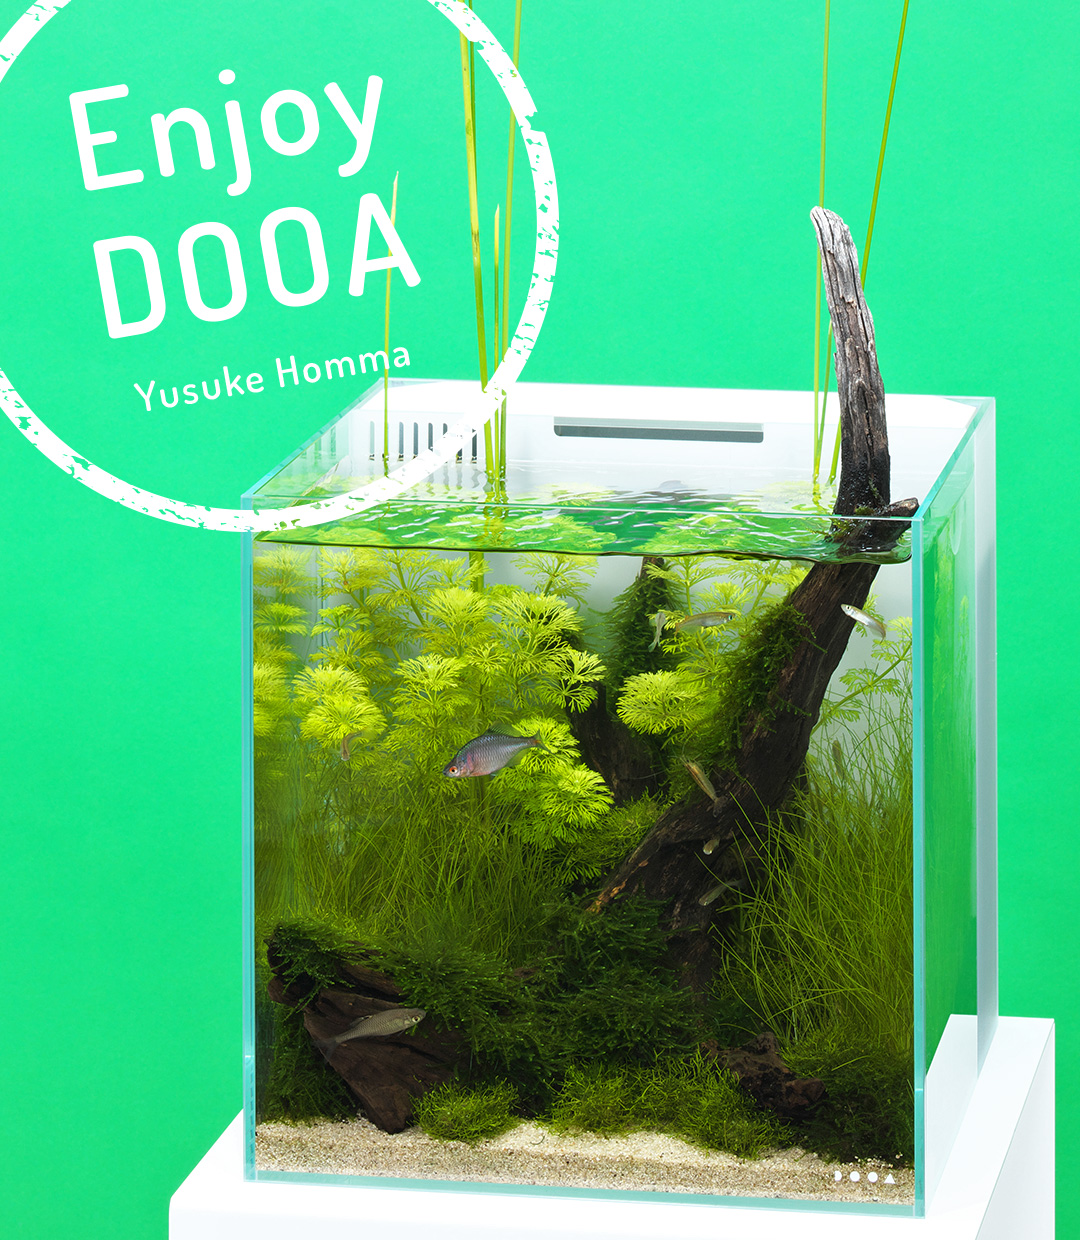 Enjoy DOOA 夏の潟をイメージしたシンプルな日本産水景